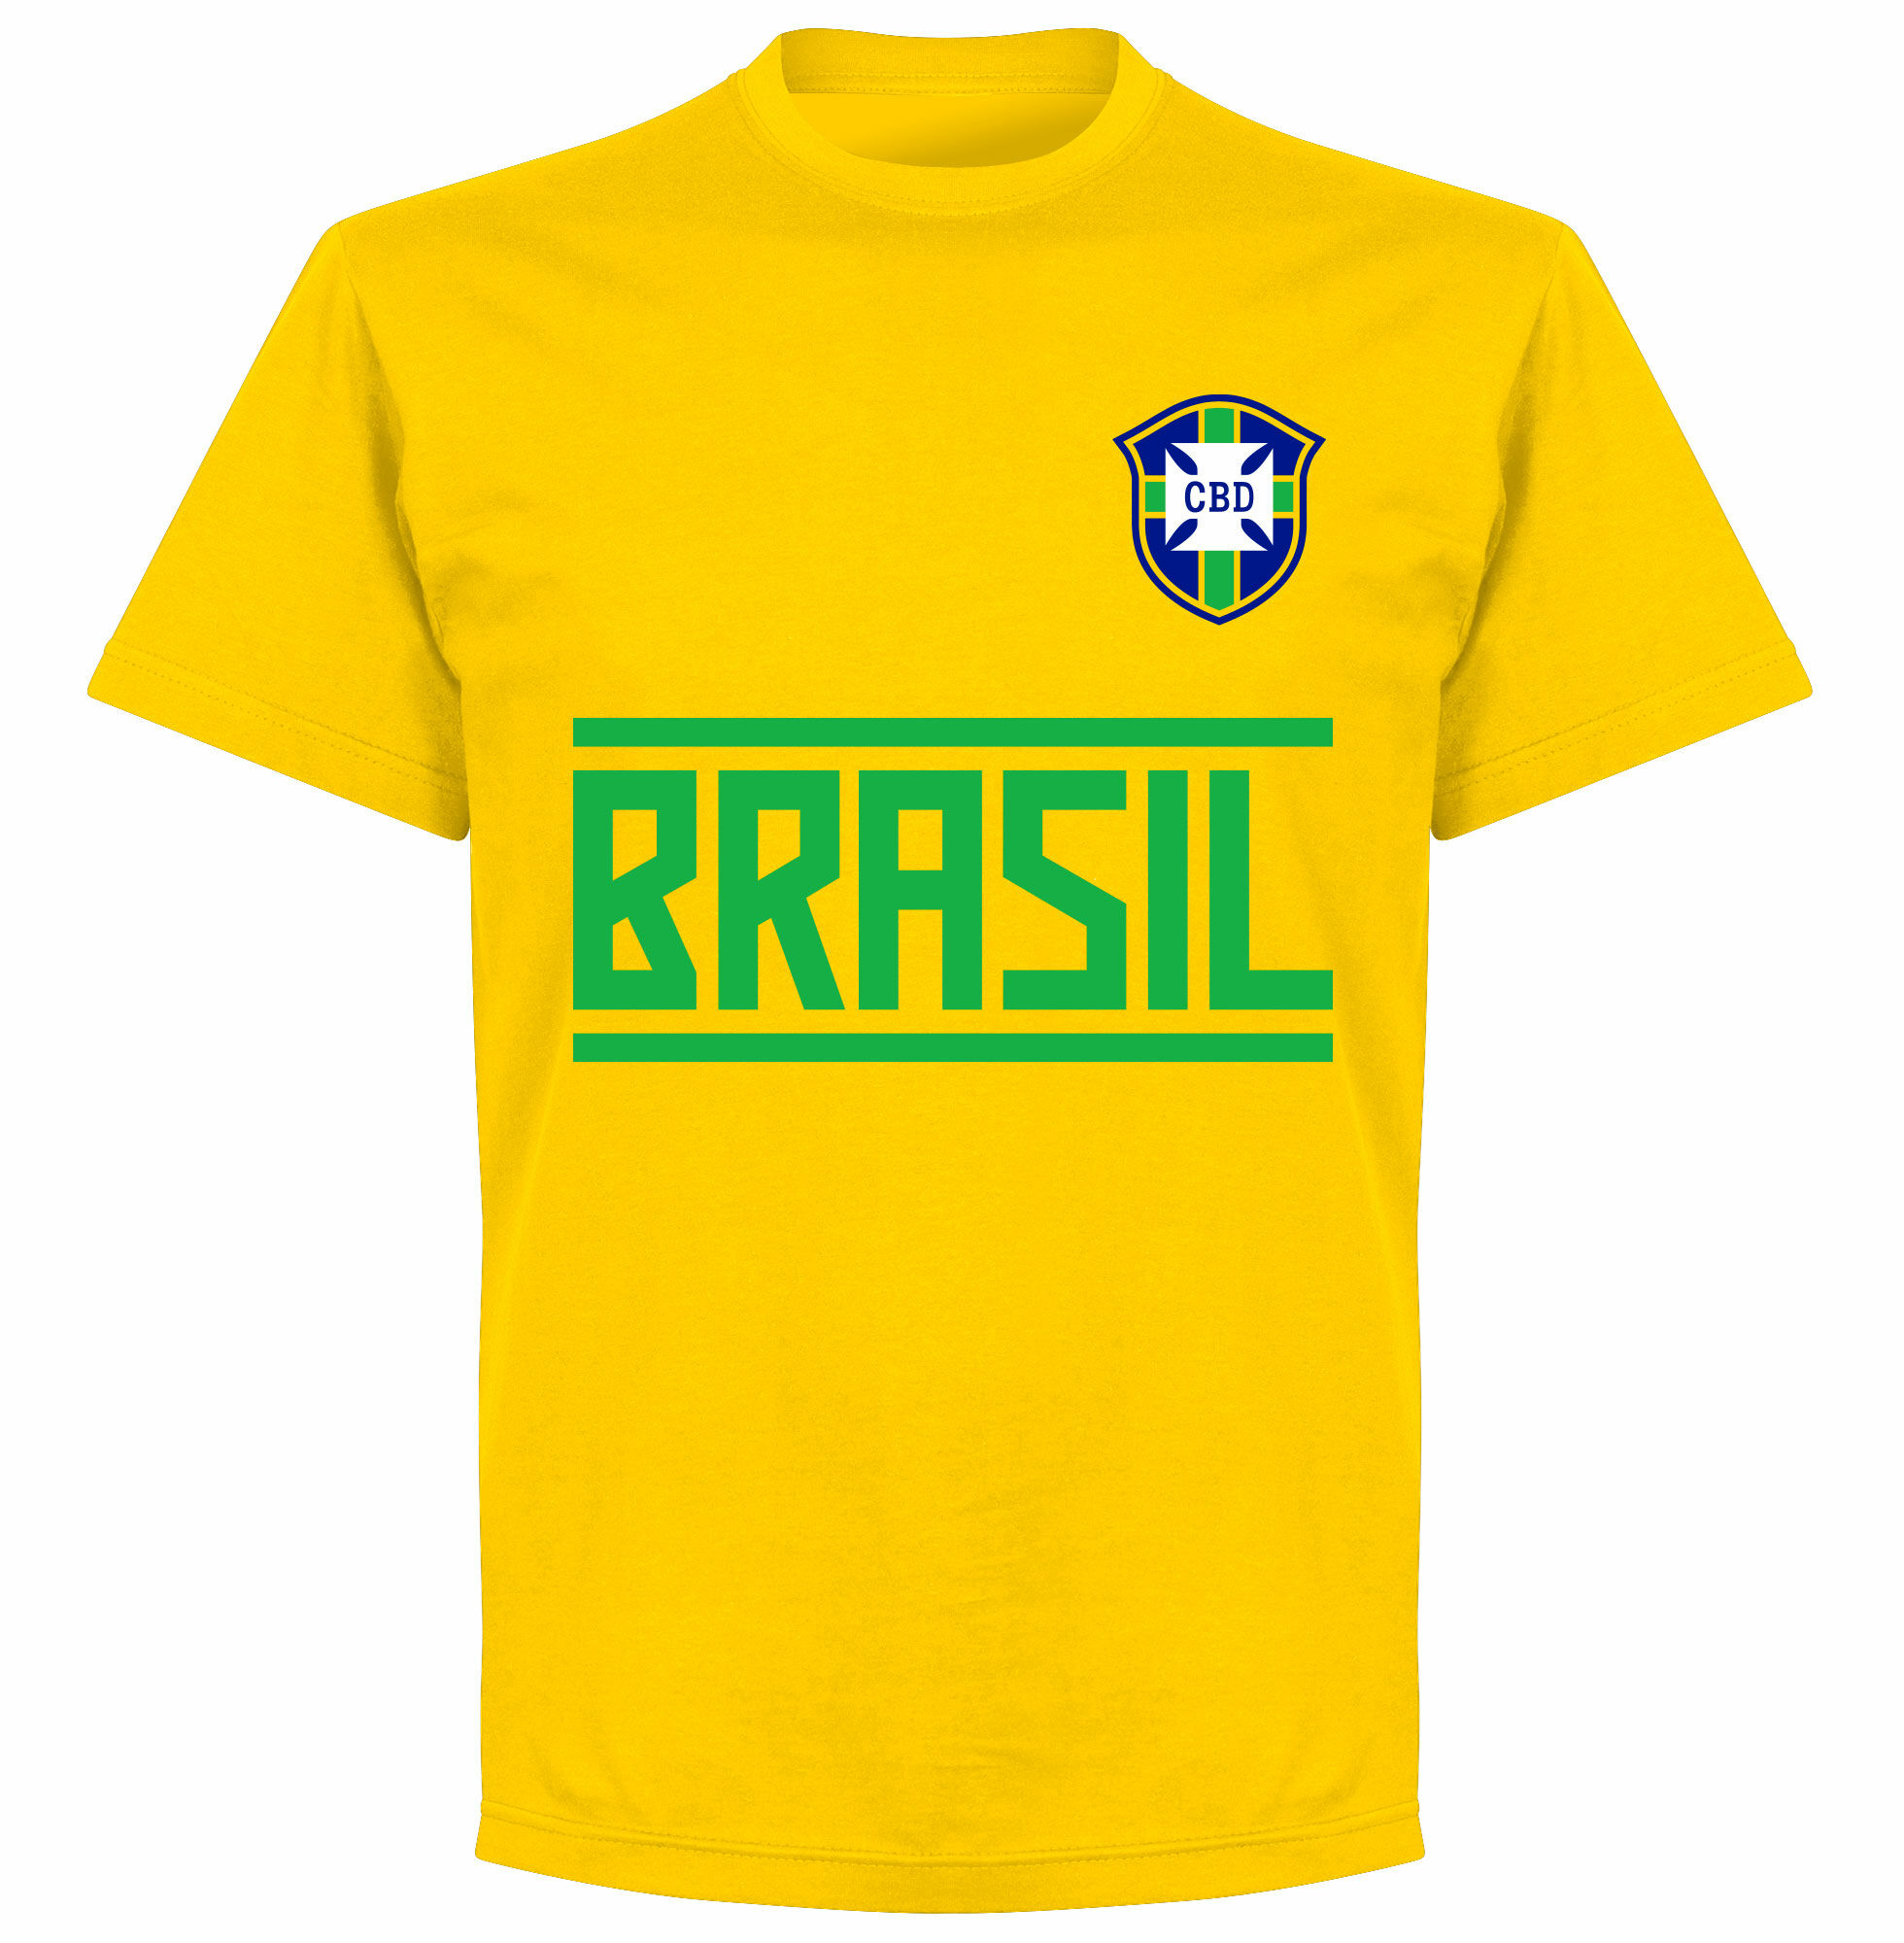 Brazílie - Tričko dětské - žluté